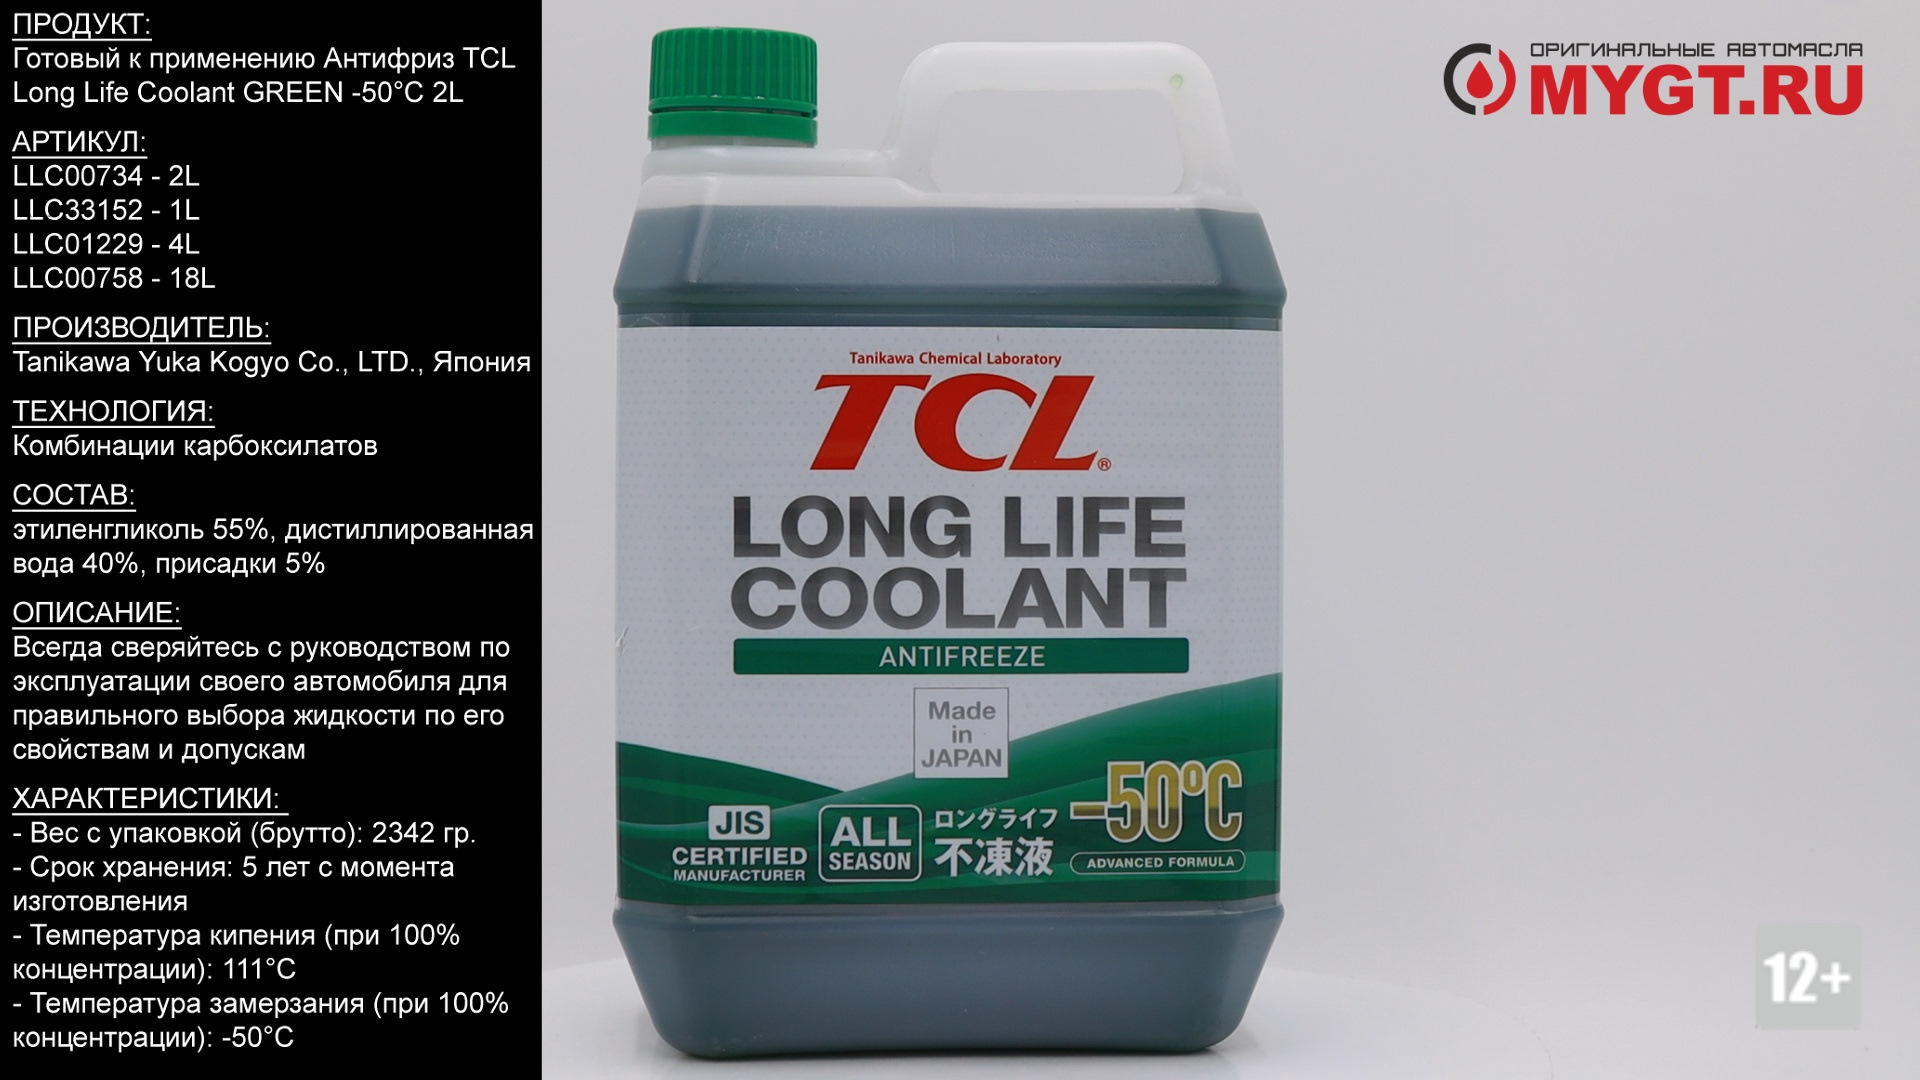 Tcl long life coolant. Антифриз TCL LLC -50c Green 4l. Антифриз TCL LLC -50c зеленый, 4 л. Антифриз TCL LLC (long Life Coolant) -50. Антифриз TCL long Life Coolant LLC, зеленый.